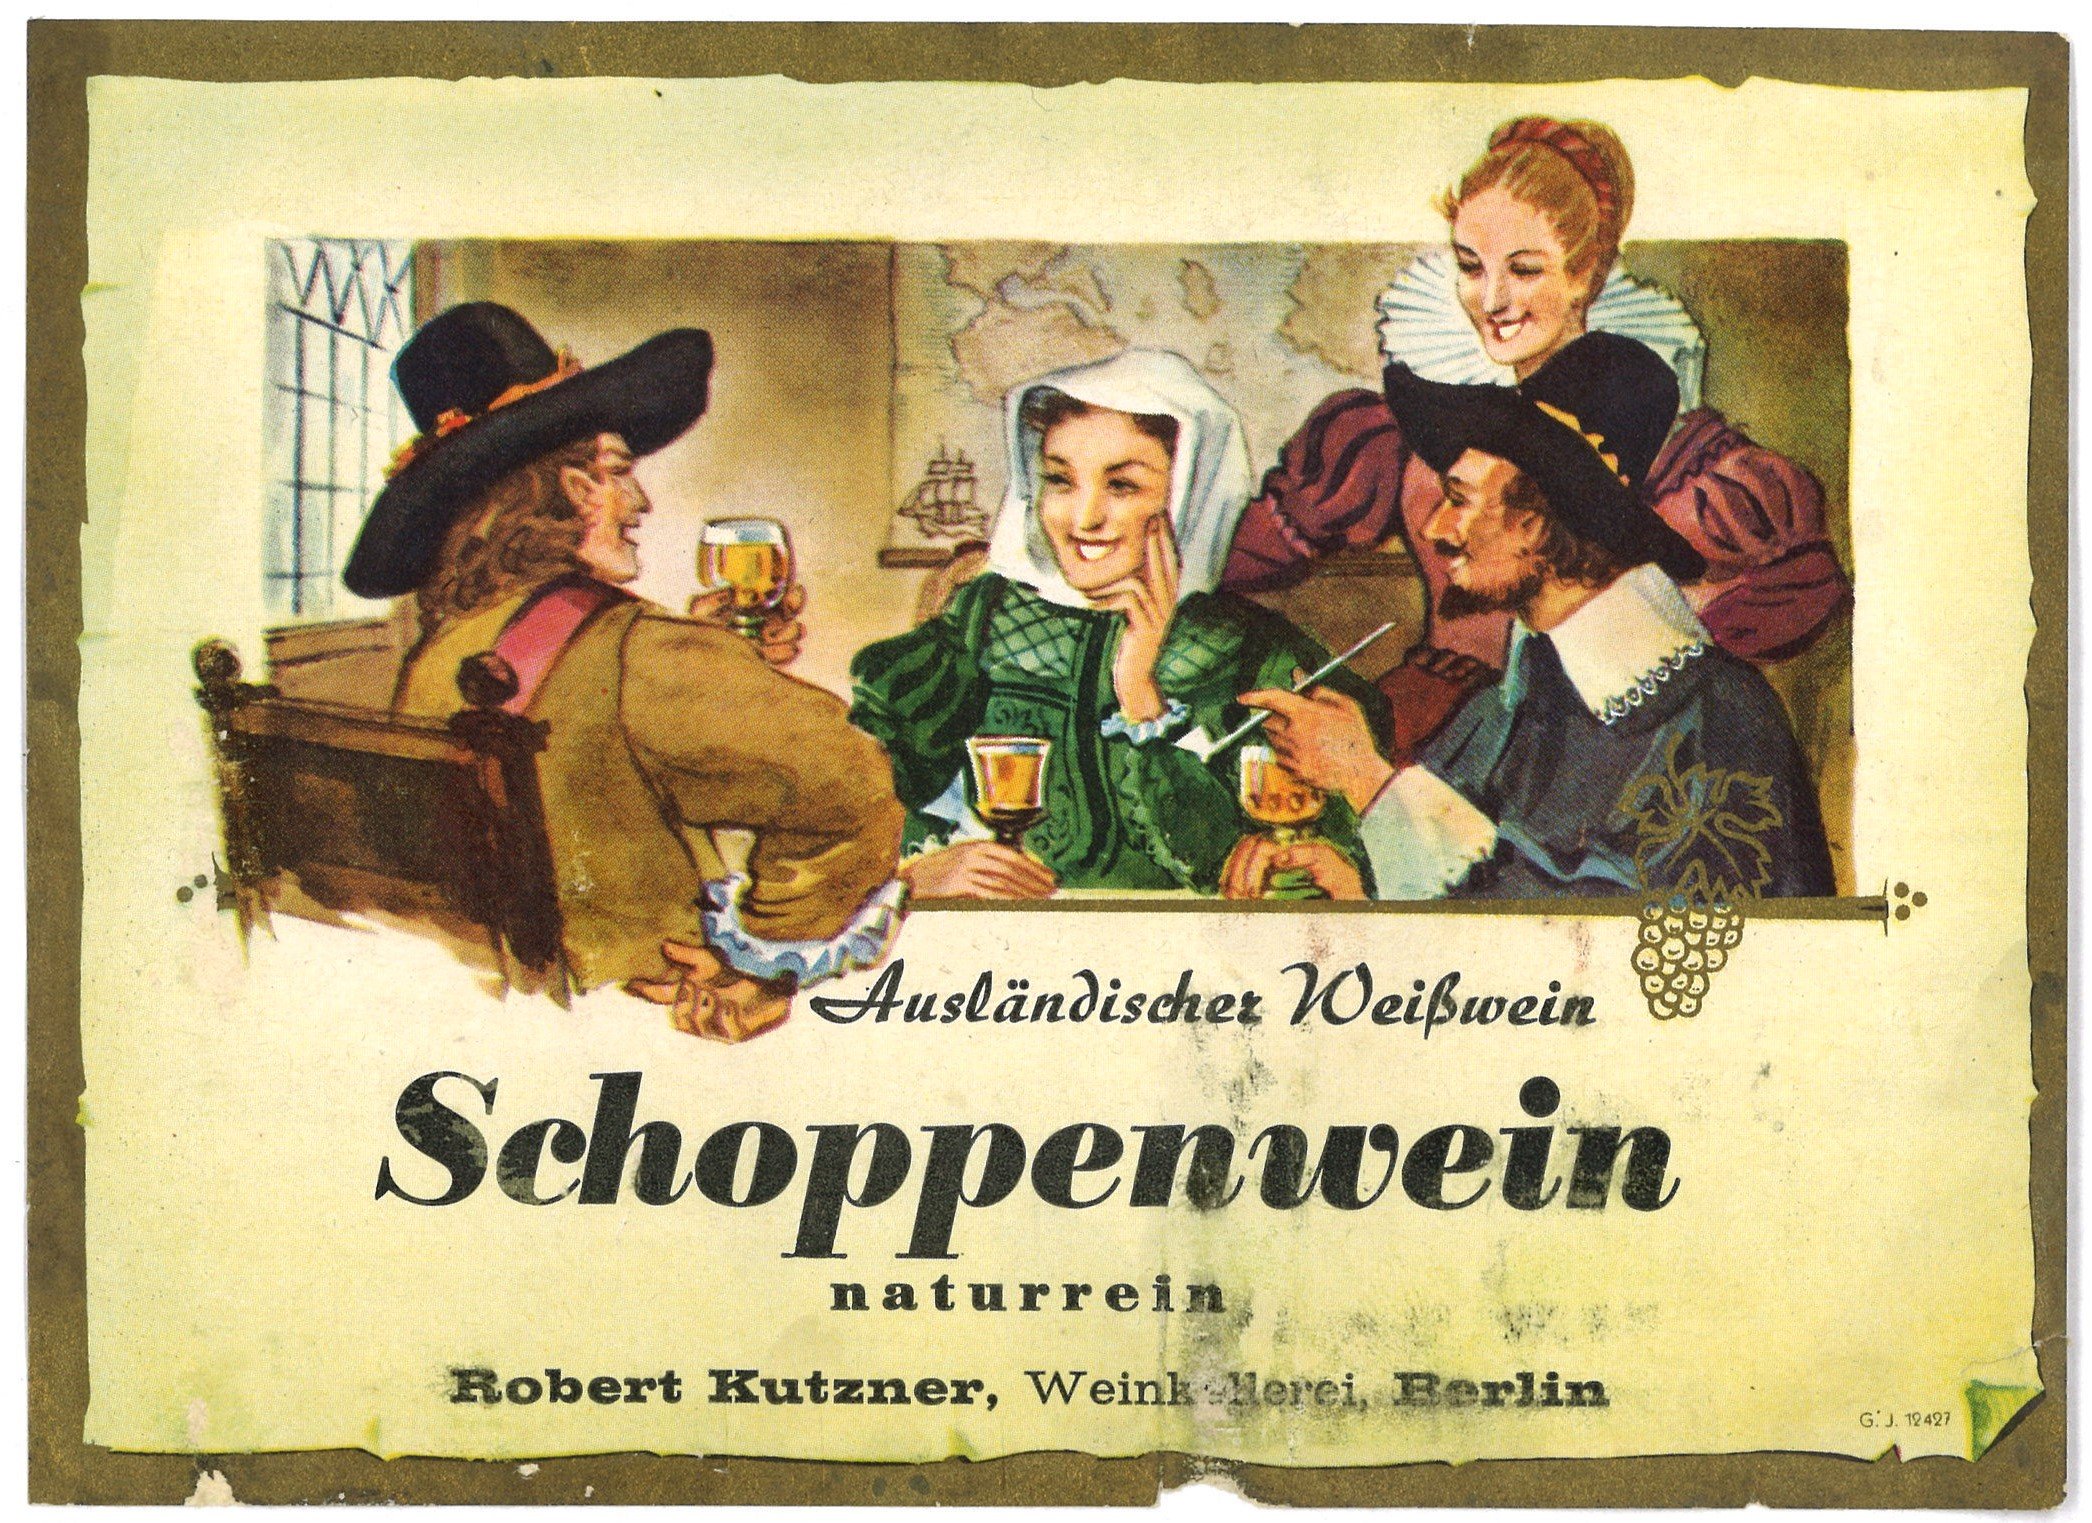 Berlin, Weinkellerei Robert Kutzner: Schoppenwein (Landesgeschichtliche Vereinigung für die Mark Brandenburg e.V., Archiv CC BY)